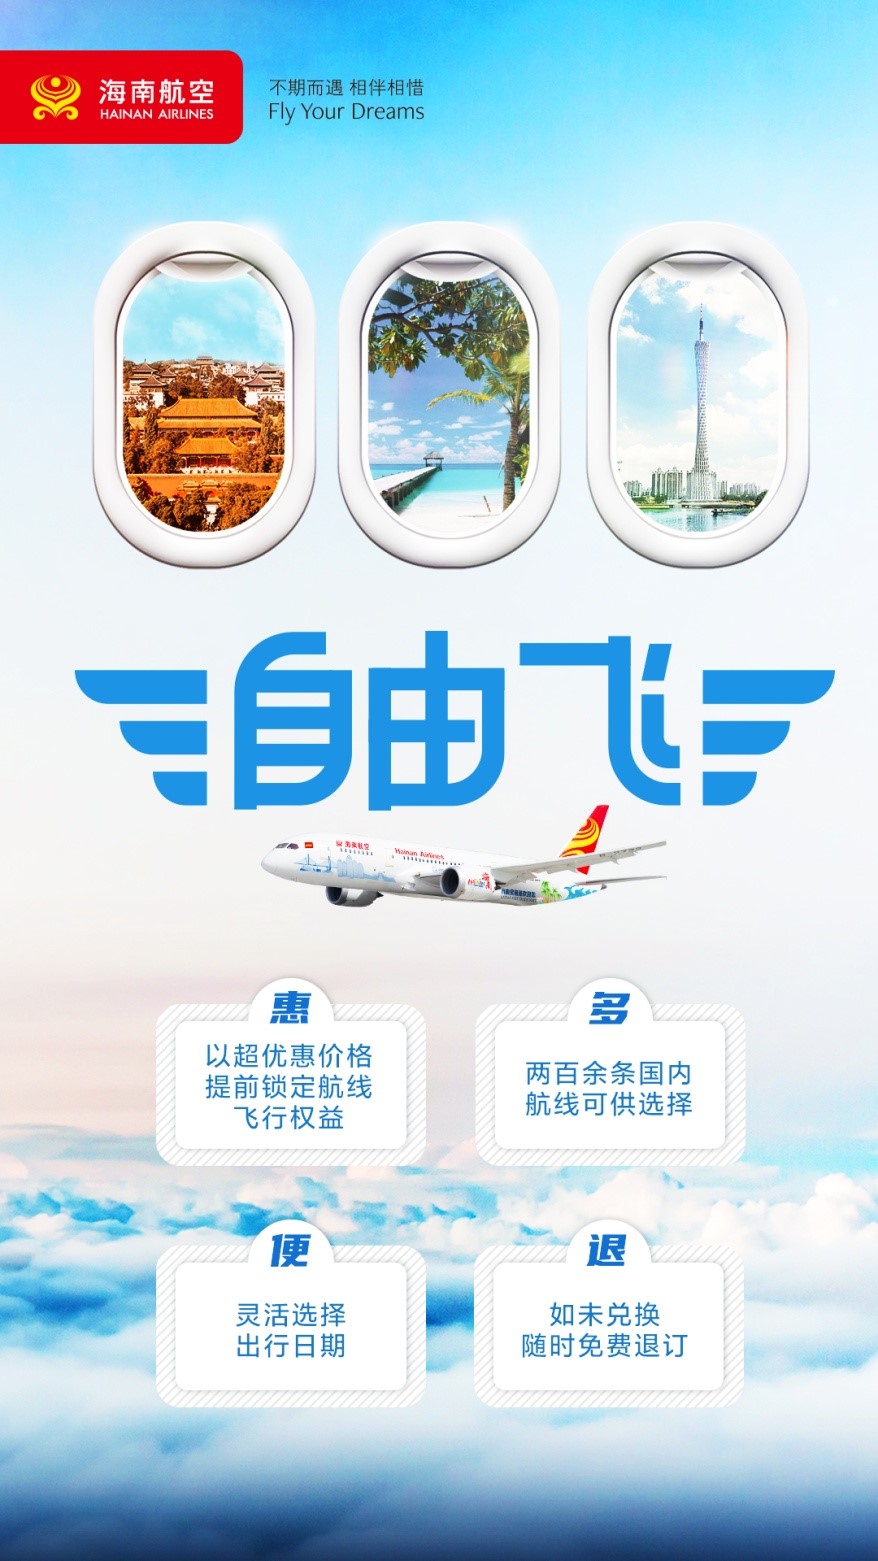 附图：海南航空“自由飞”第三期产品海报.jpg